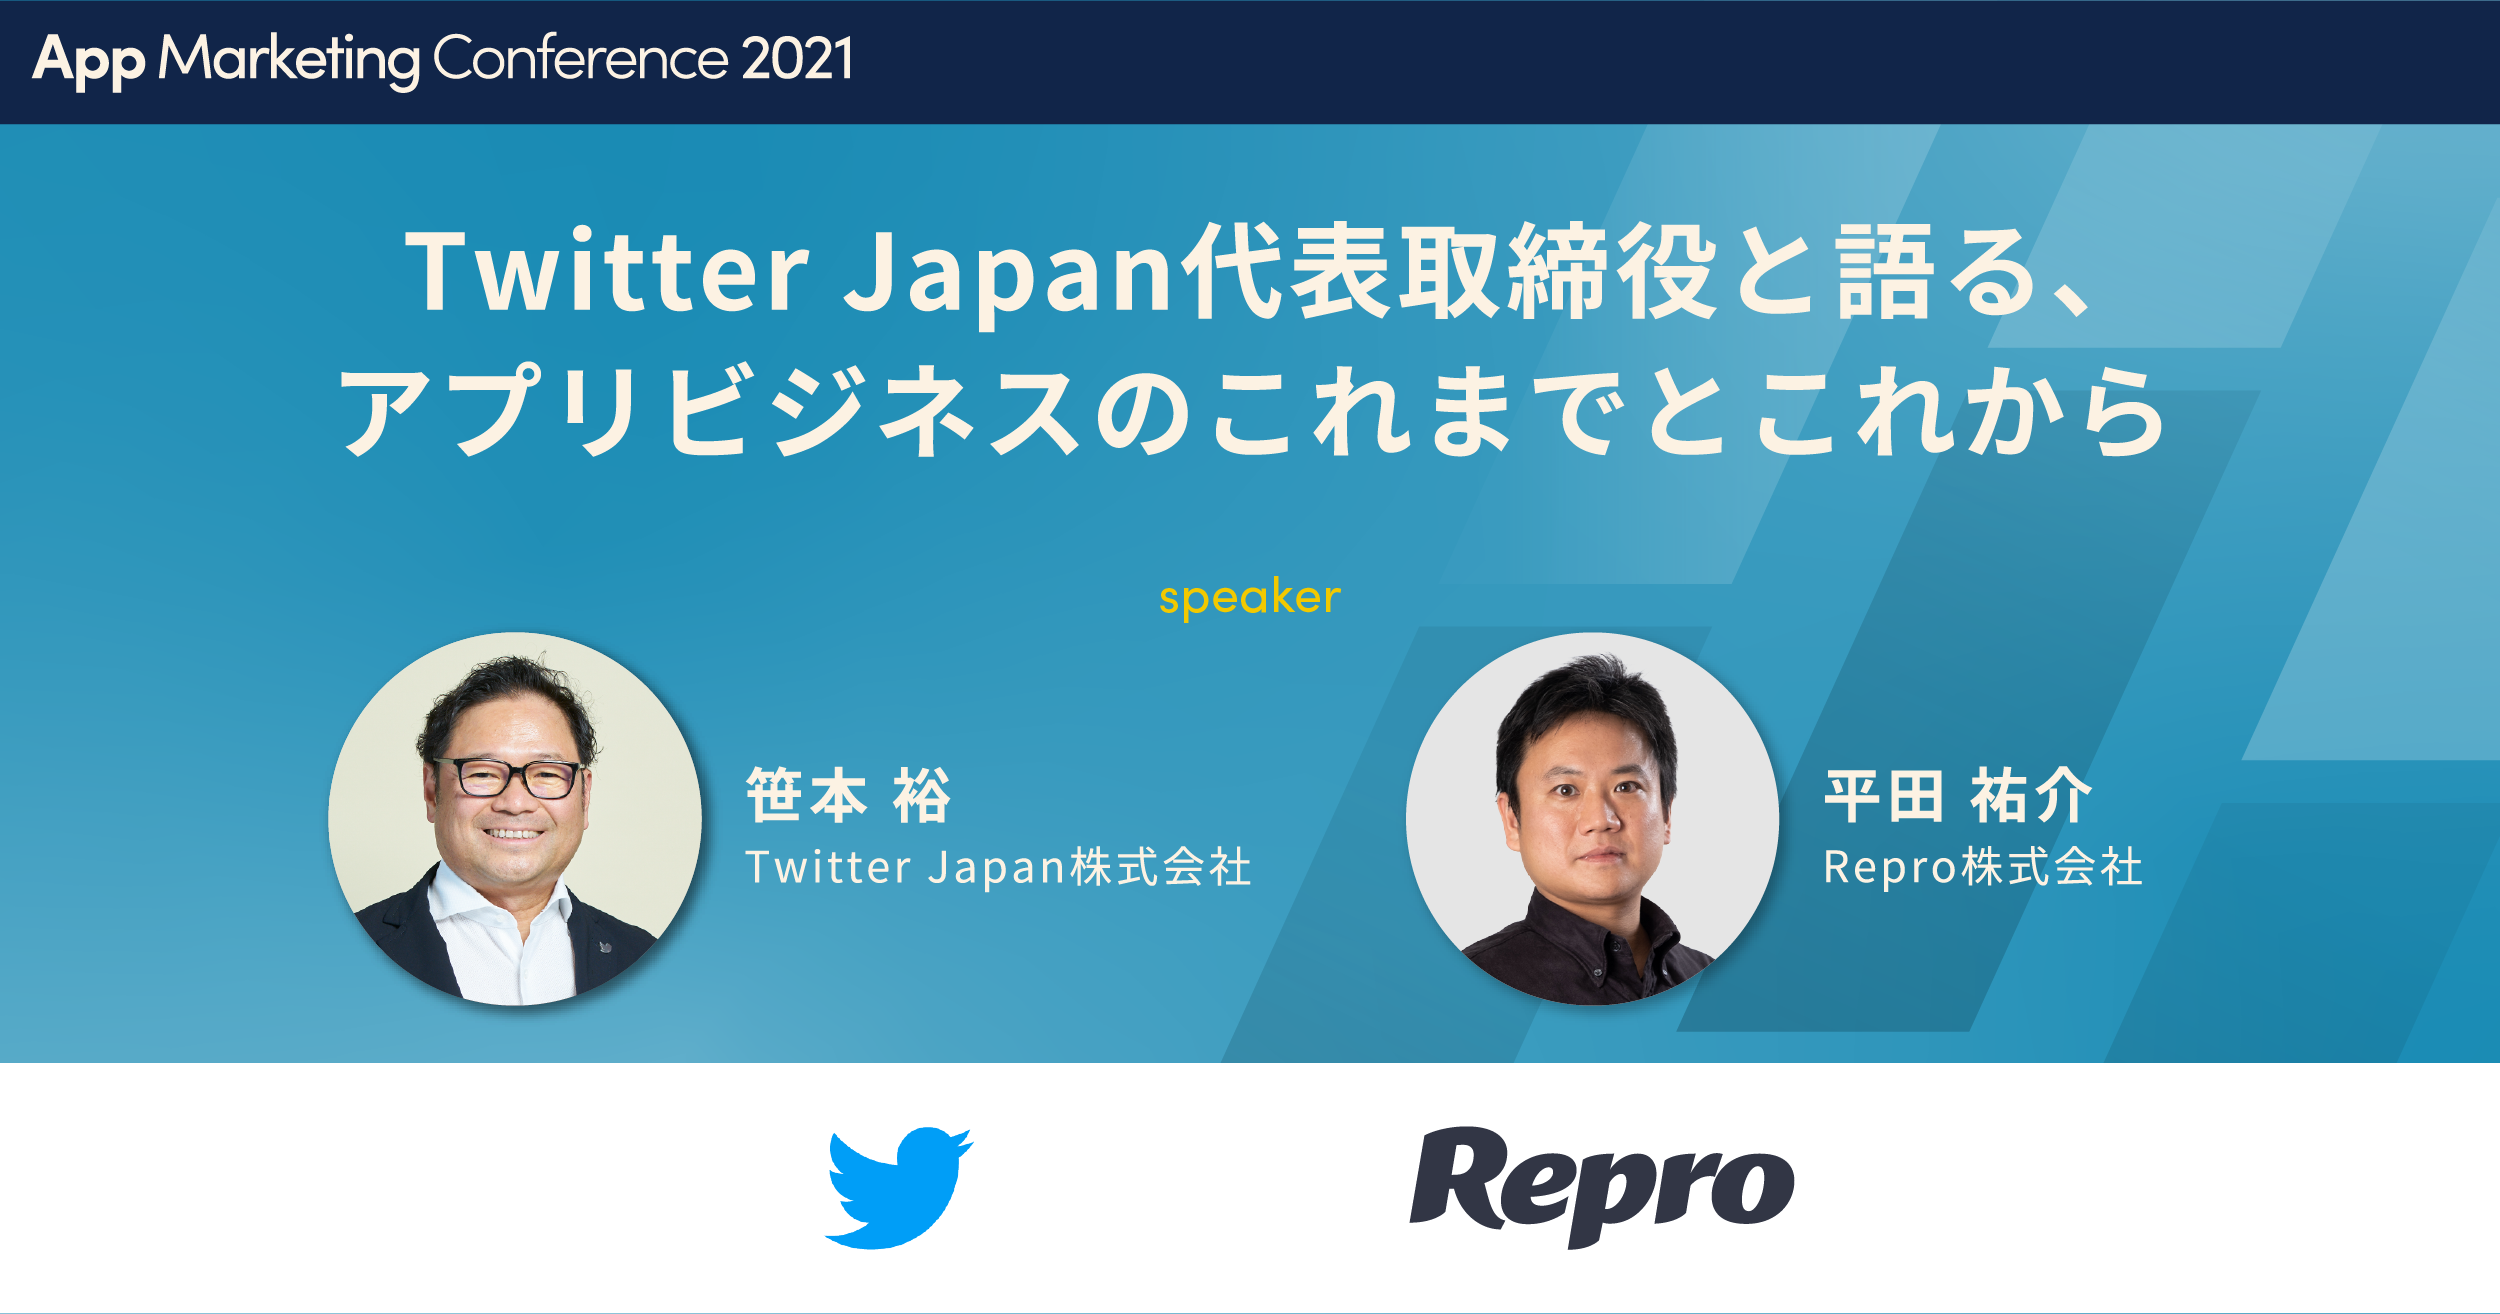 Twitter Japan代表取締役と語る、アプリビジネスのこれまでとこれから【App Marketing Conference 2021】